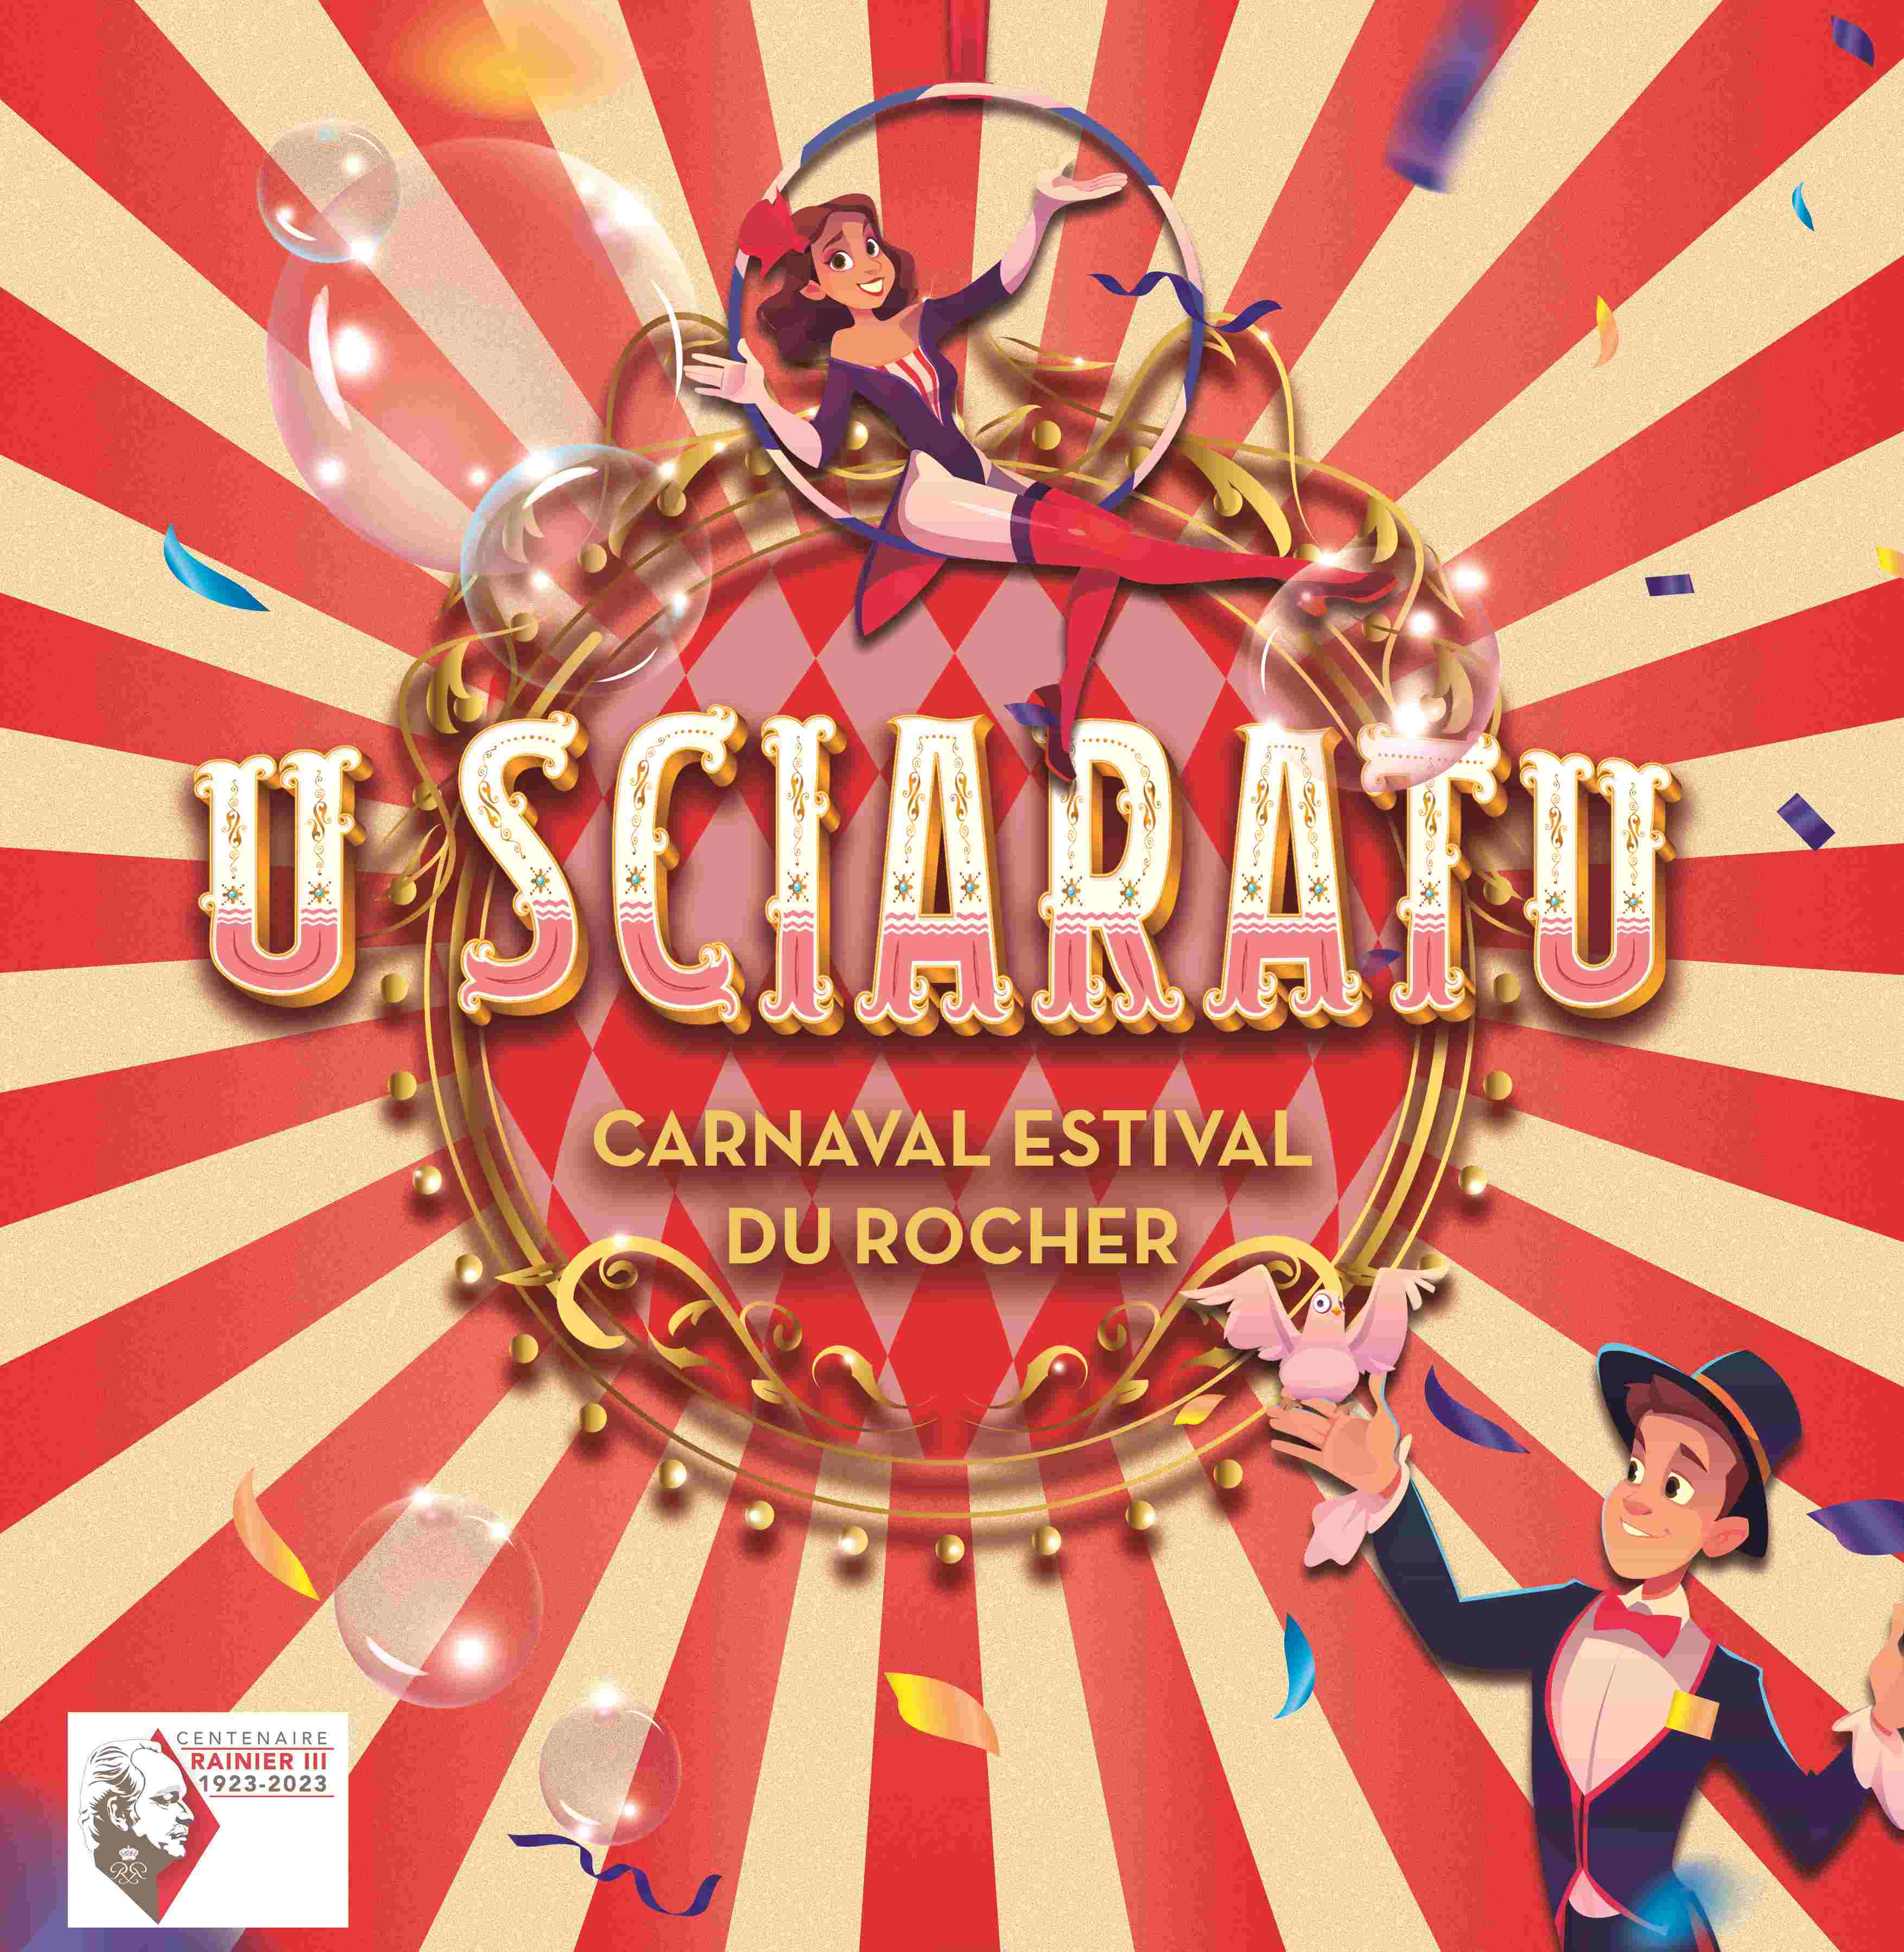 U Sciaratu - Le Carnaval Estival du Rocher